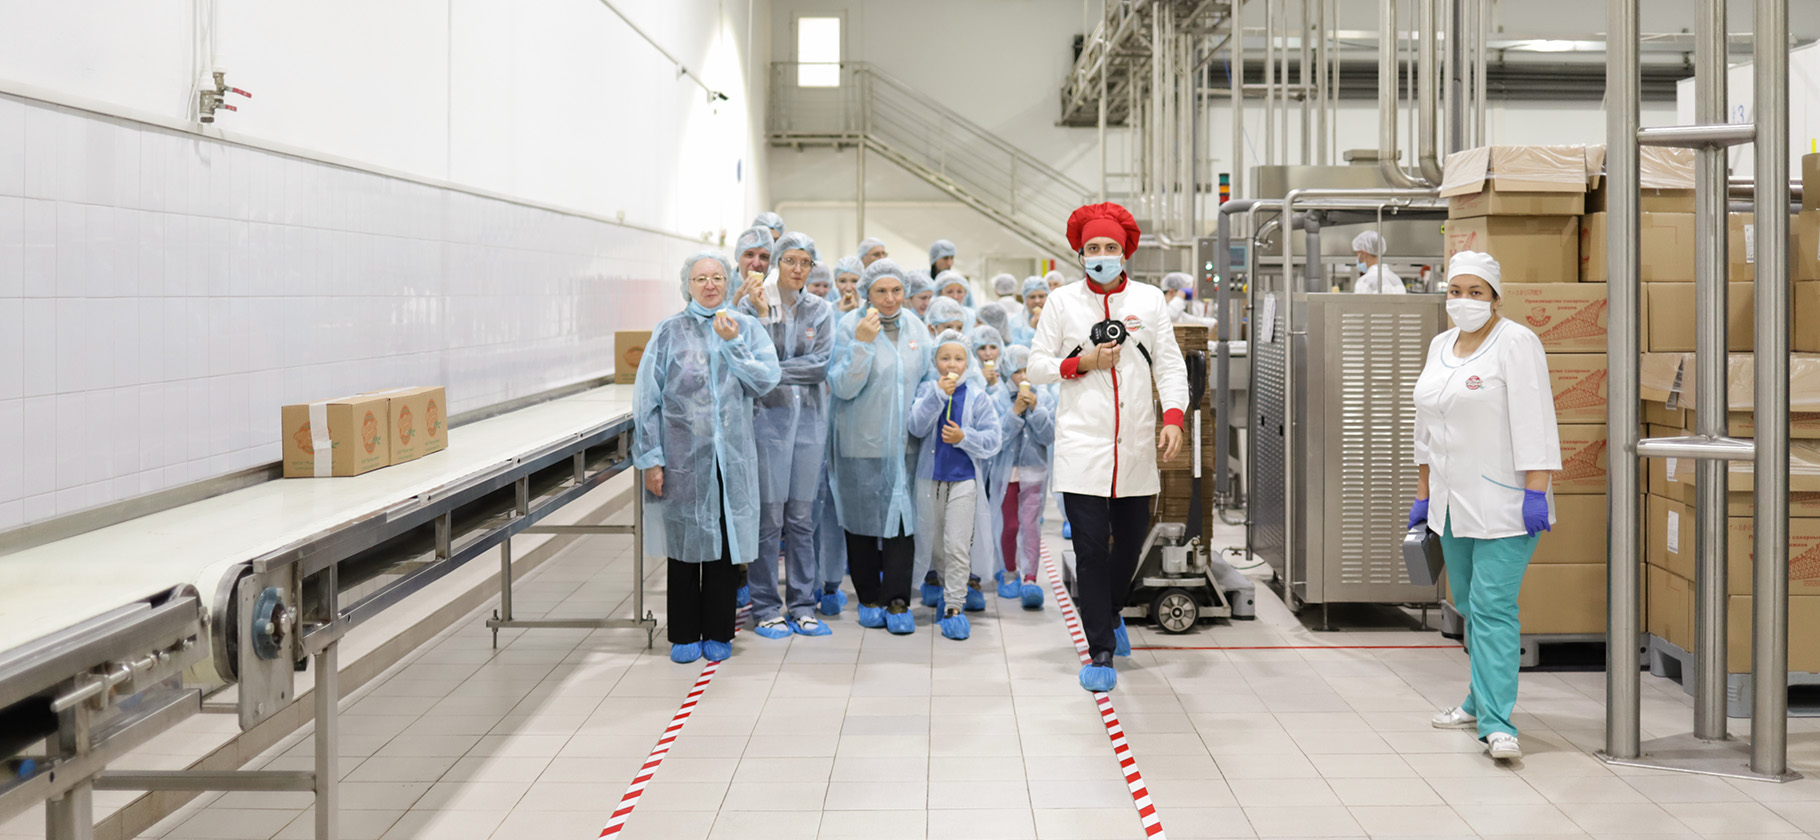 Как делают мороженое, сырки и шоколад: 7 экскурсий на фабриках в Москве